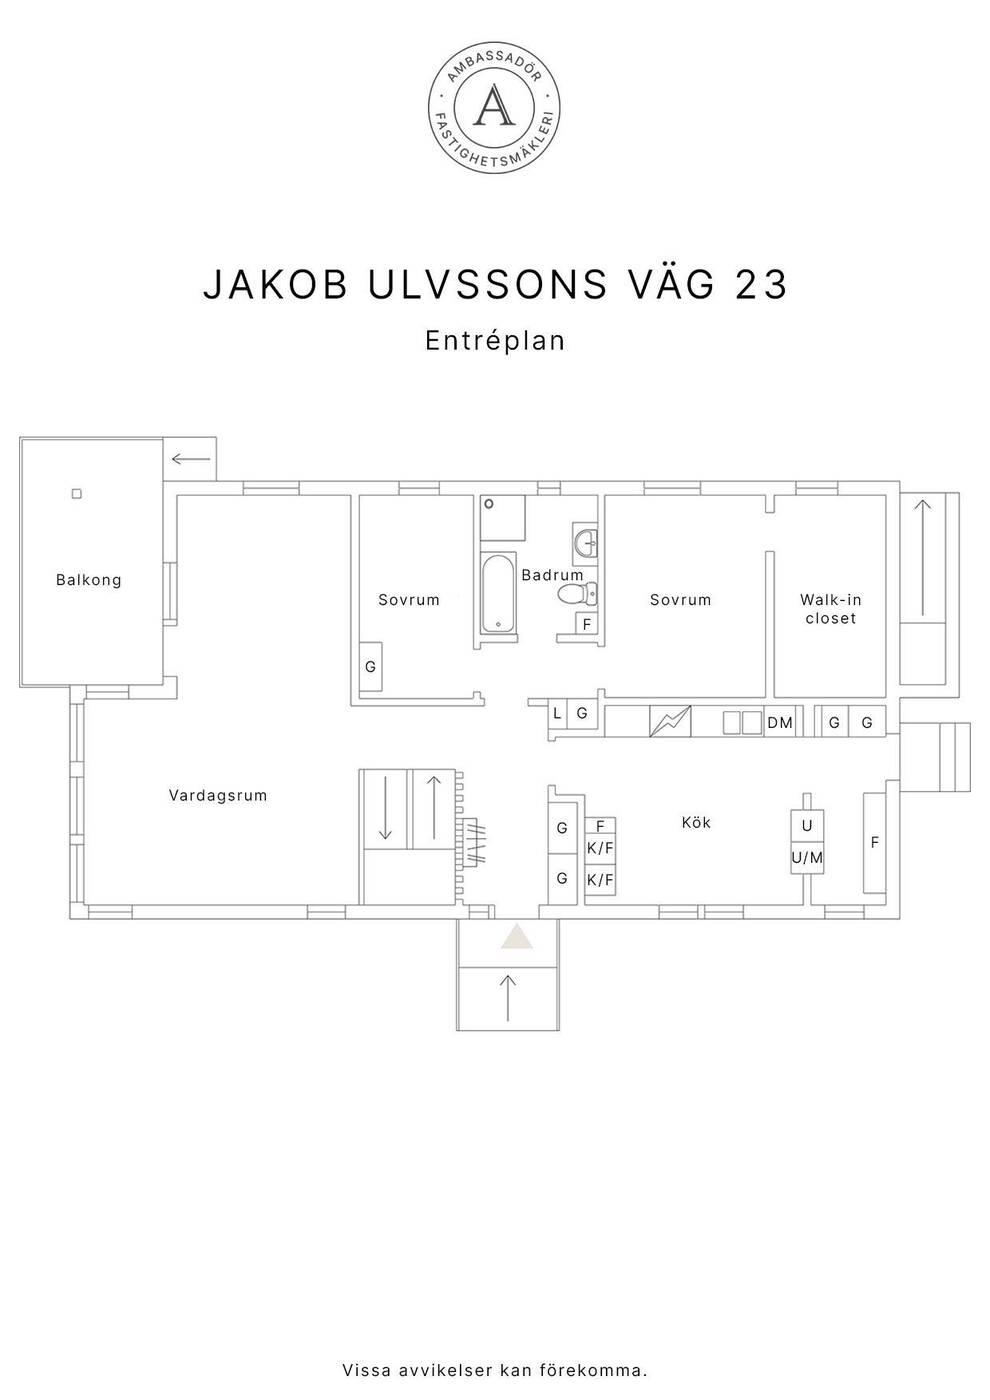 Jakob Ulvssons väg 23 bv copy